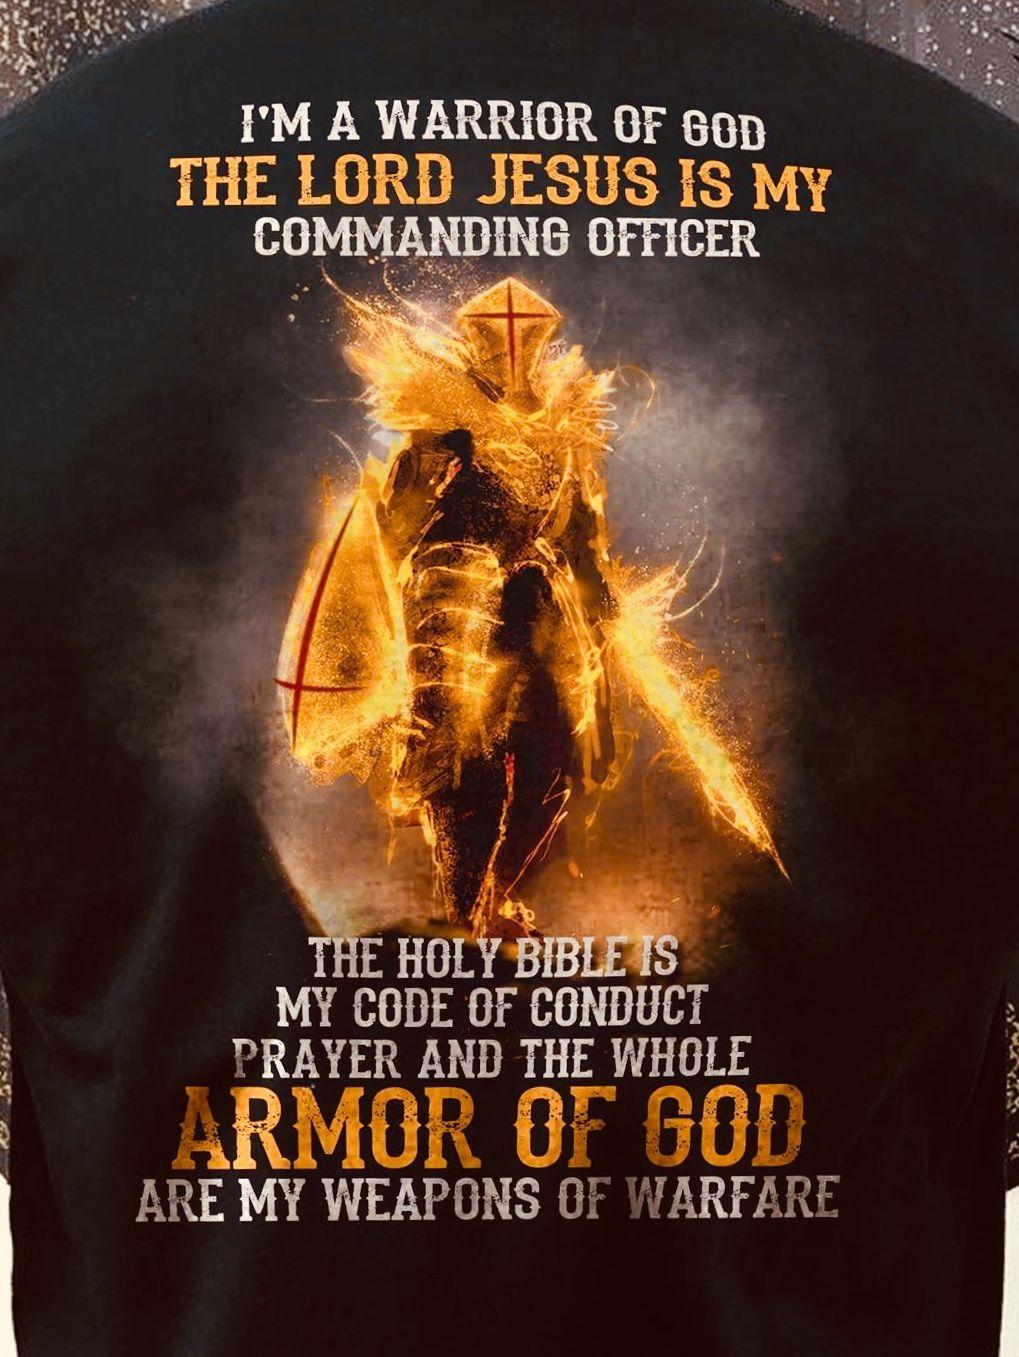 Armor Of God Wallpaper